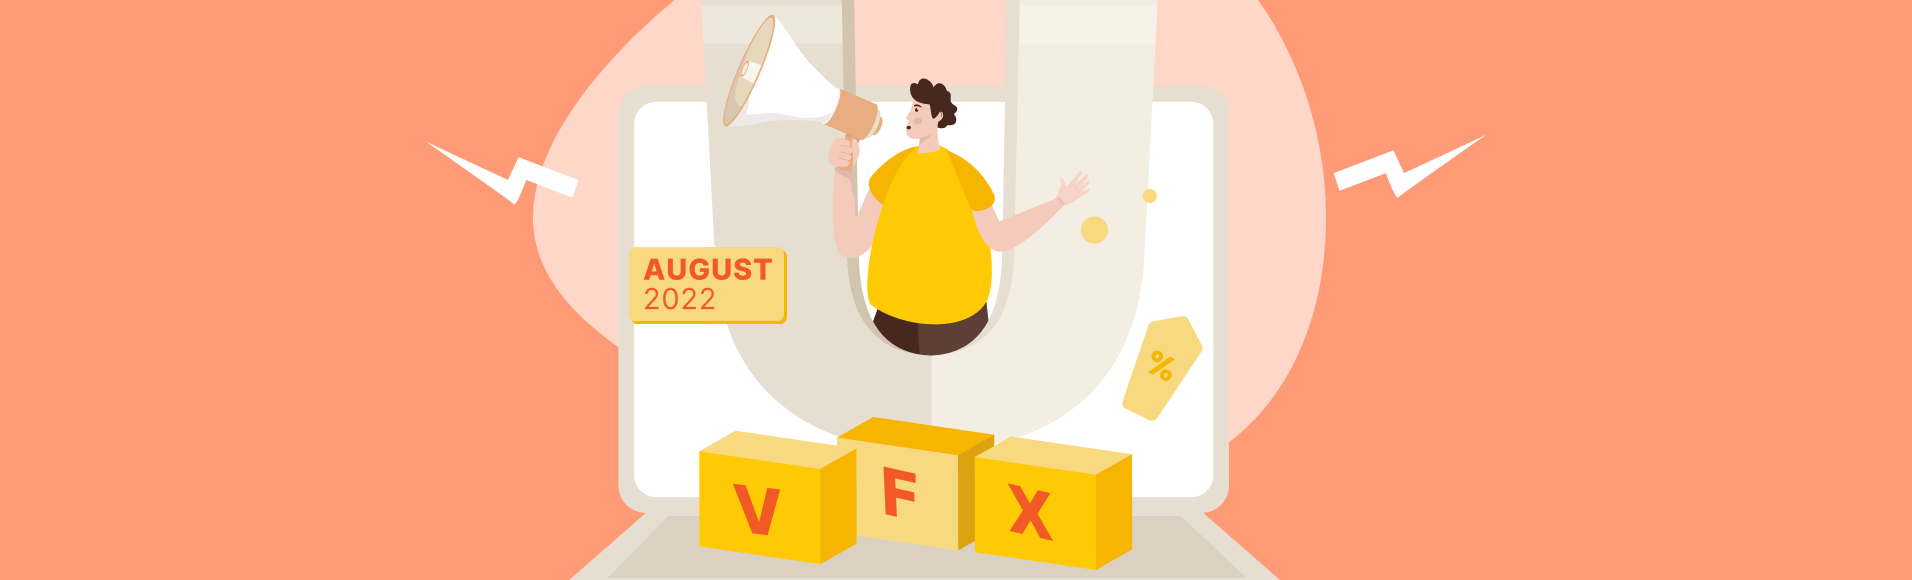 Campañas promocionales vfxAlert en agosto de 2022